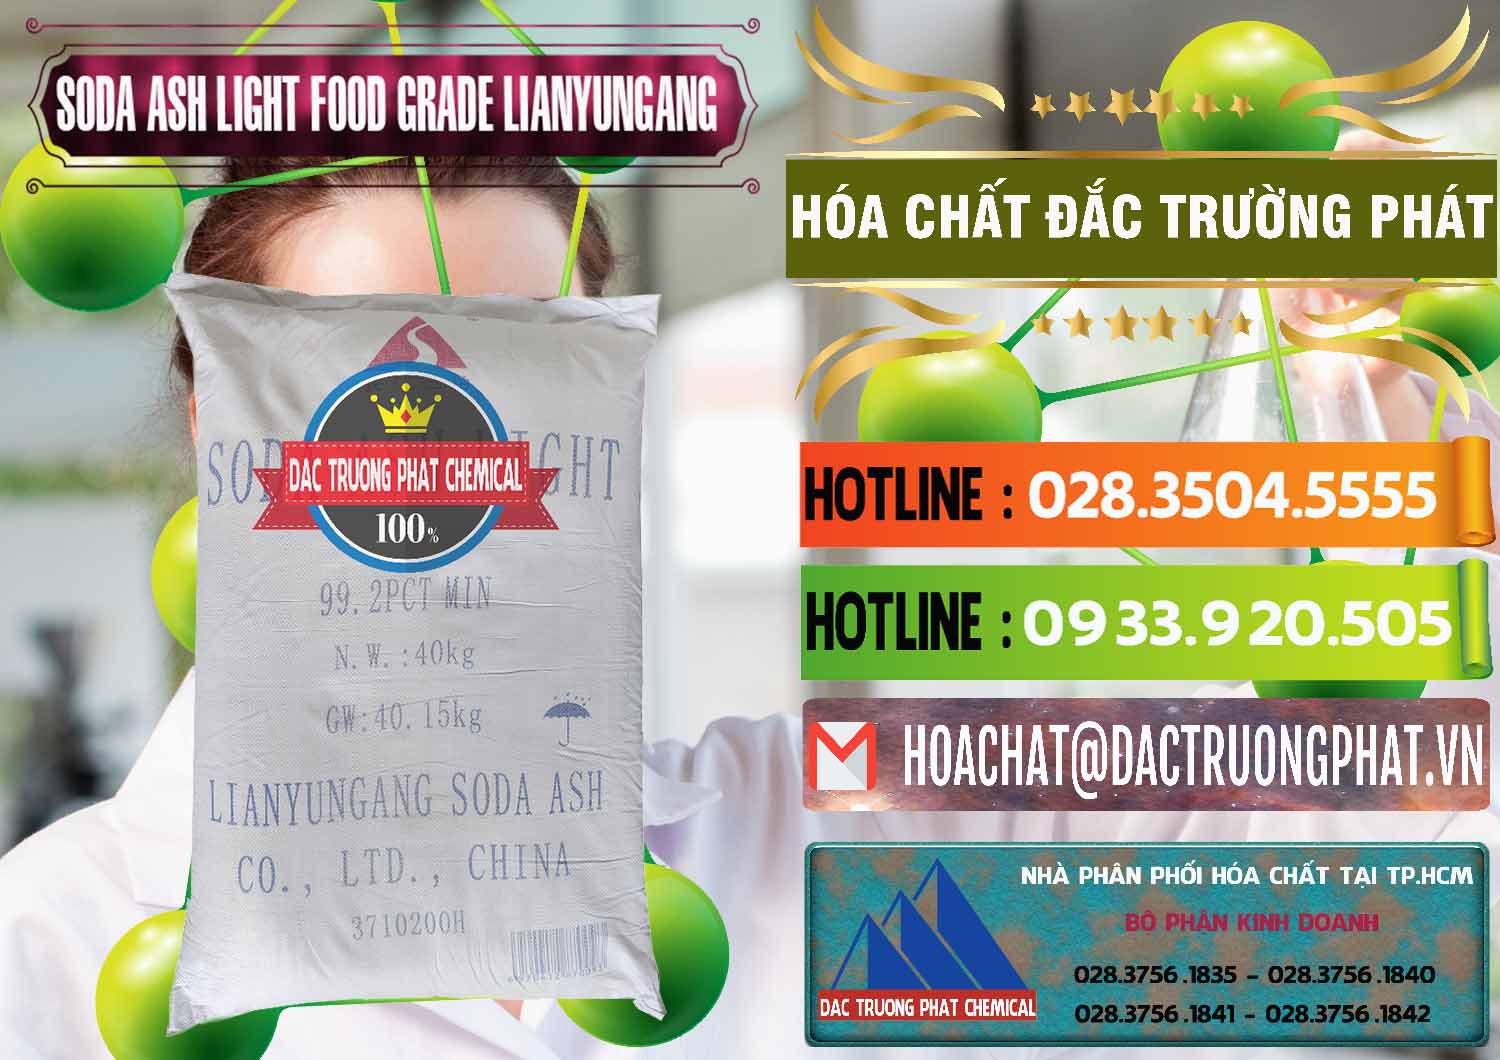 Cty bán ( cung ứng ) Soda Ash Light - NA2CO3 Food Grade Lianyungang Trung Quốc - 0222 - Chuyên bán & phân phối hóa chất tại TP.HCM - cungcaphoachat.com.vn